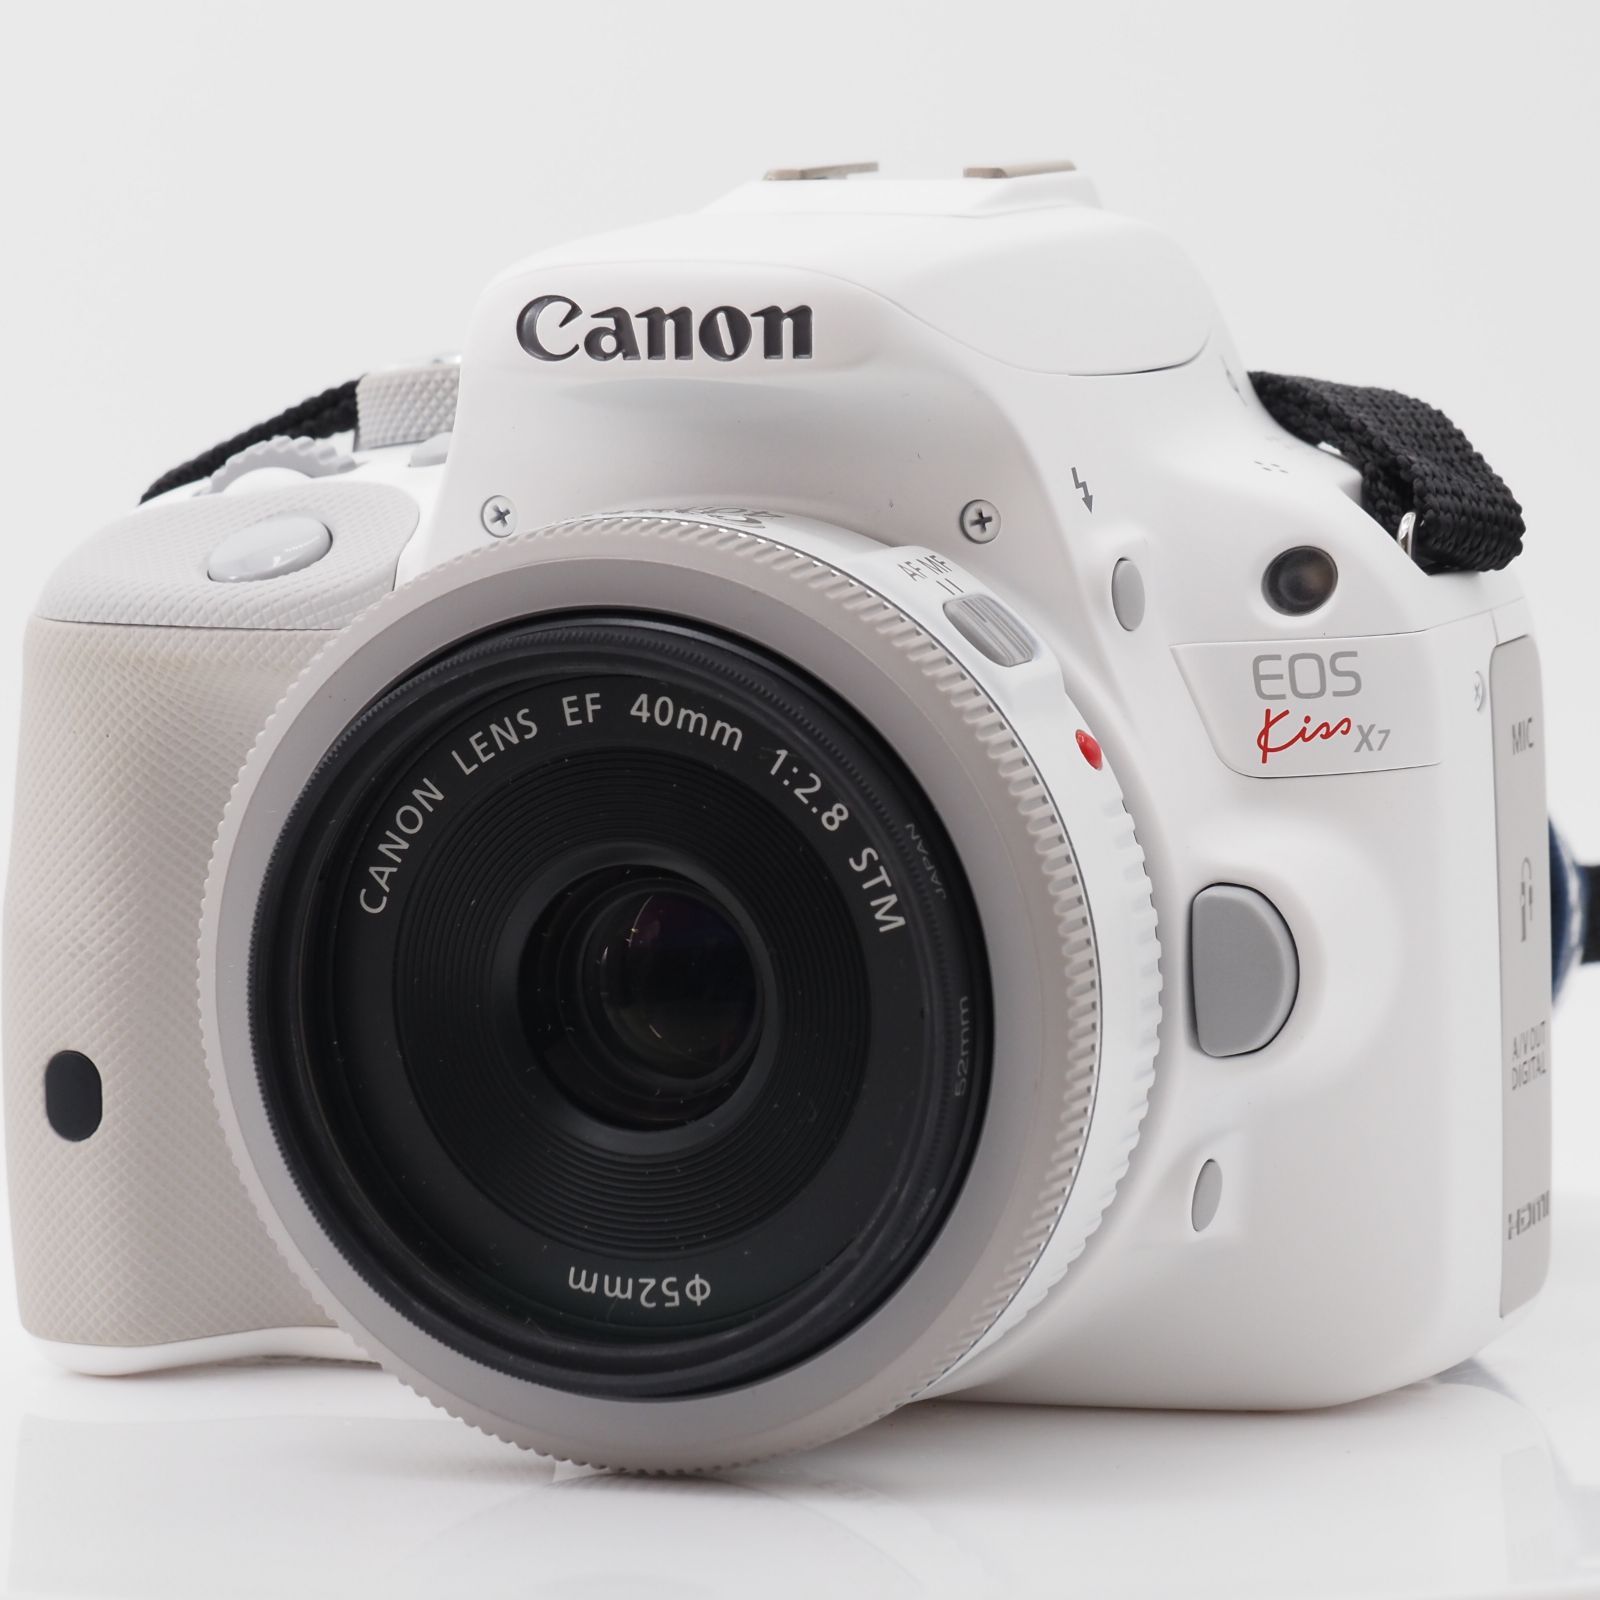 101350☆ほぼ新☆Canon デジタル一眼レフカメラ EOS Kiss X7(ホワイト) ダブルレンズキット2 EF-S18-55mm F3. 5-5.6 IS STM(ホワイト) EF40mm F2.8 STM(ホワイト) 付属 KISSX7WH-WLK2 SUNBRIGHT株式会社  メルカリ